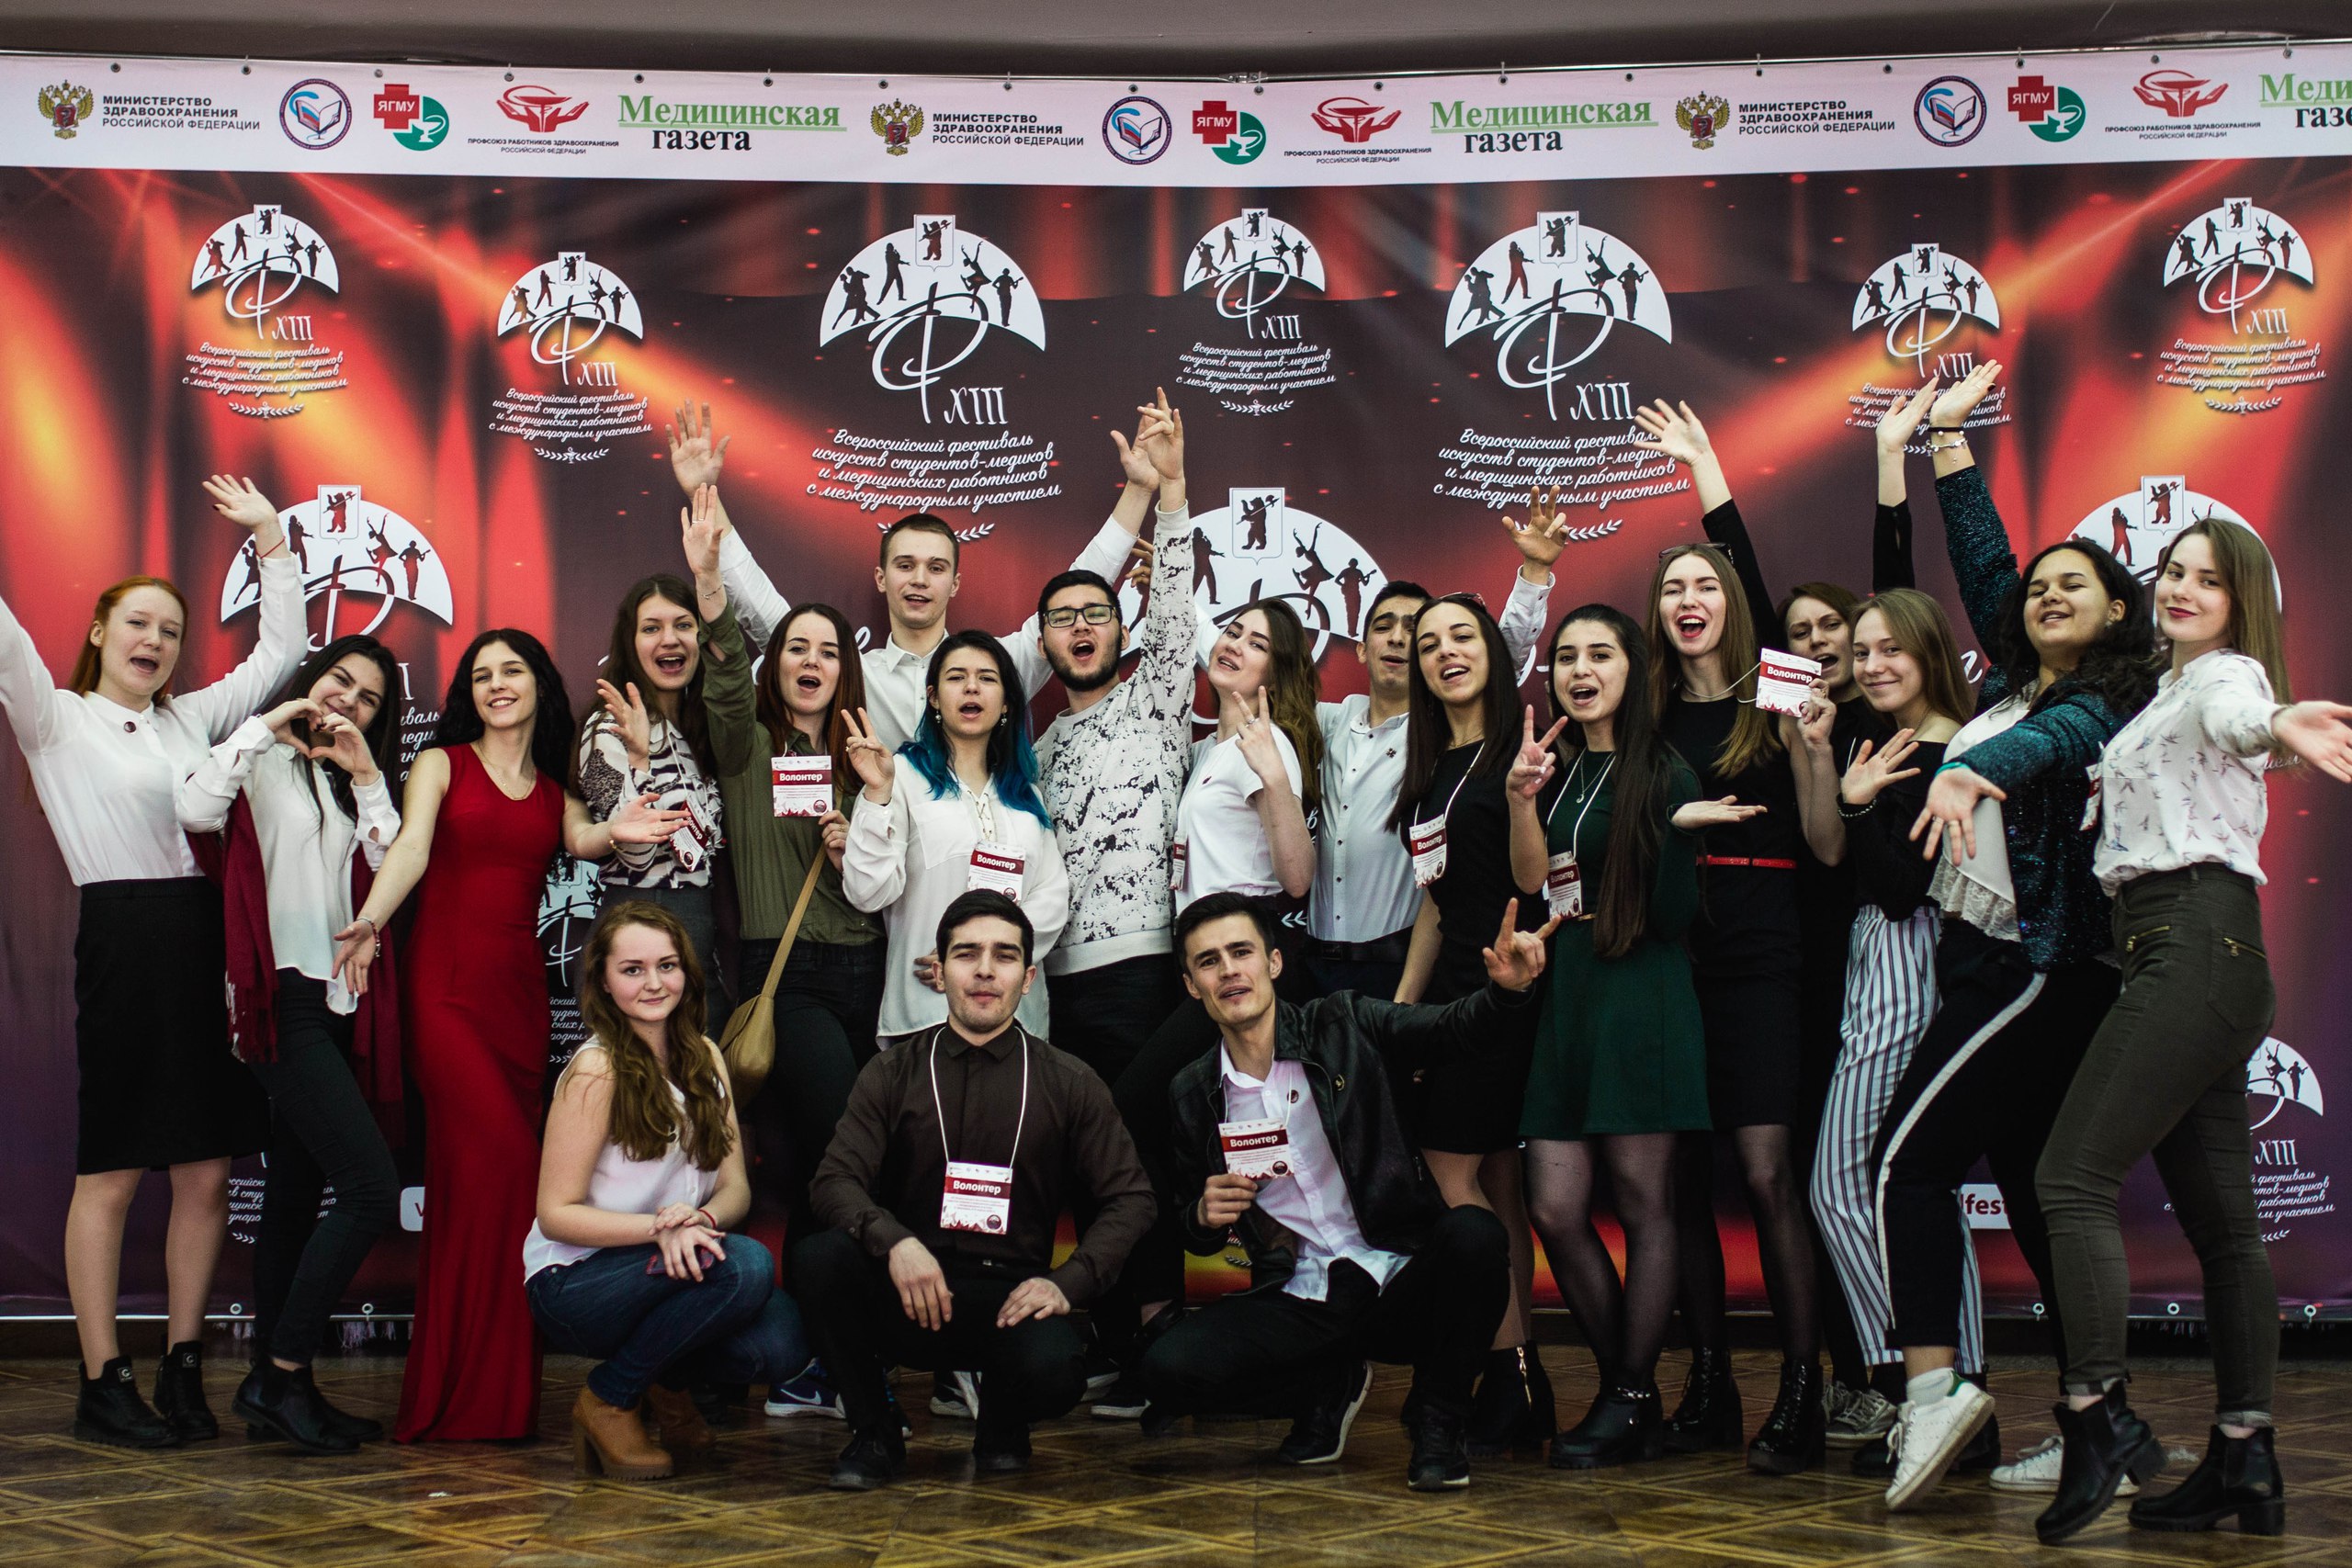 XIII Всероссийский фестиваль искусств студентов-медиков и медицинских работников с международным участием